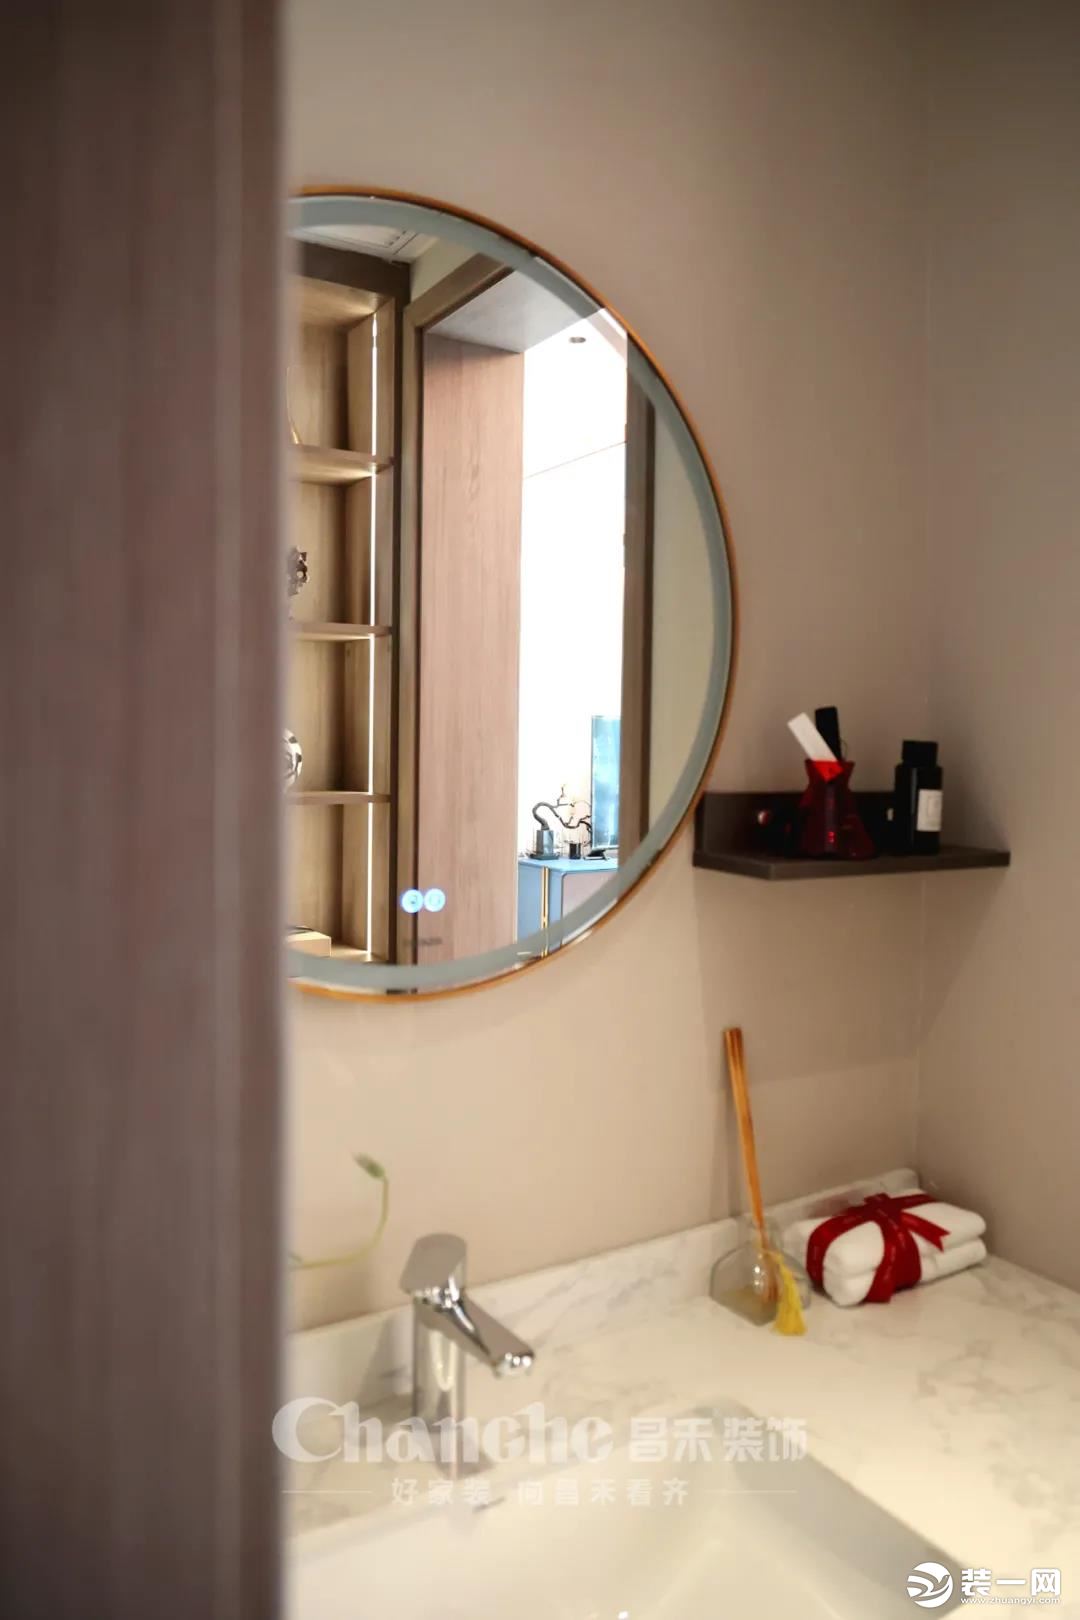 宽敞的卫浴空间，设计上以实用和节约空间的收纳为主，干湿分离的设计，简约不失大气。